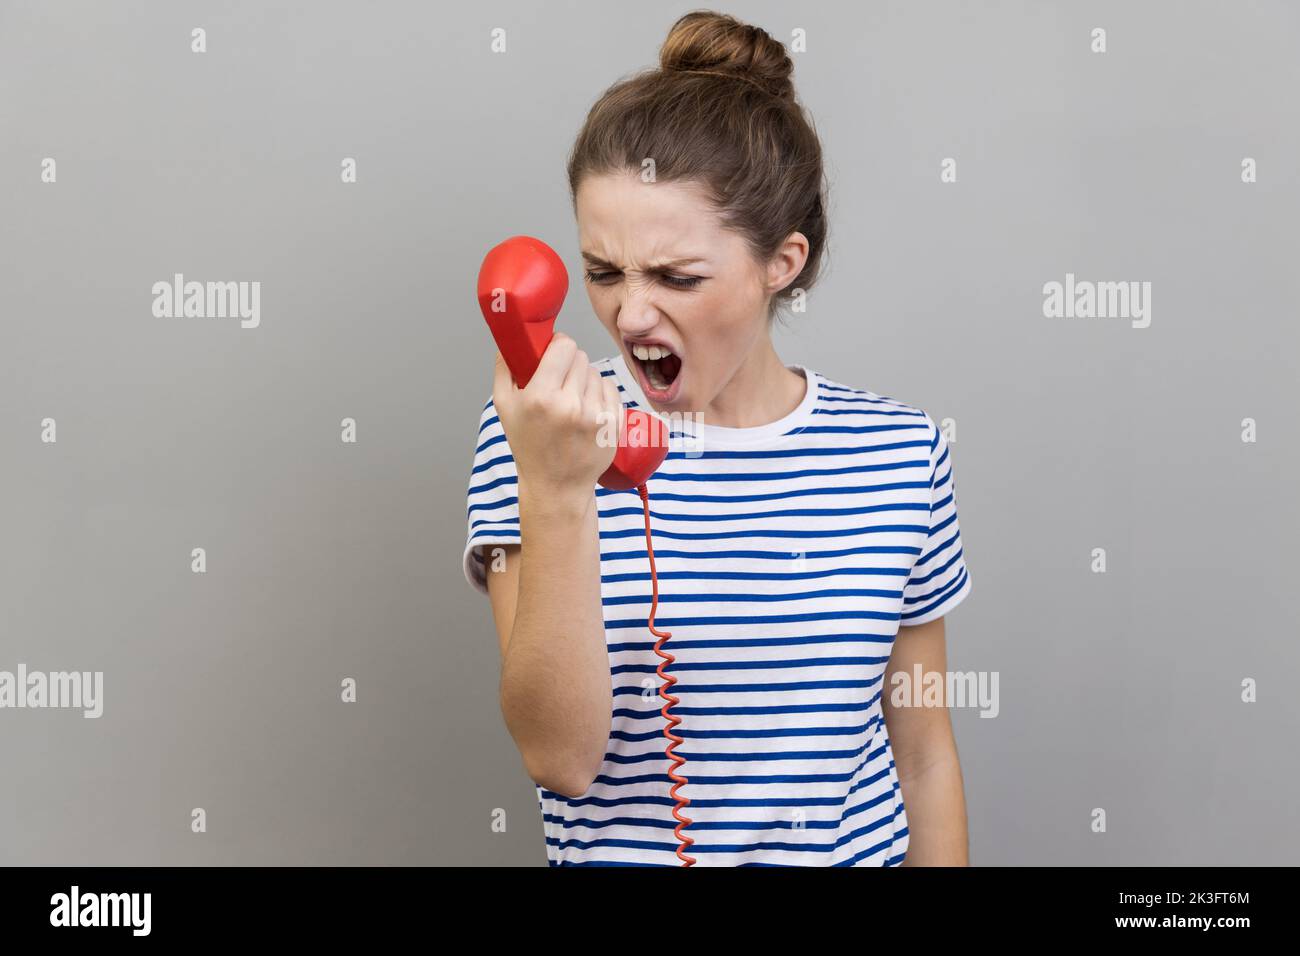 Portrait d'une femme nerveuse en colère portant un T-shirt rayé criant et hurlant parlant téléphone rétro de ligne fixe, se plaignant de la qualité de la connexion. Prise de vue en studio isolée sur fond gris. Banque D'Images